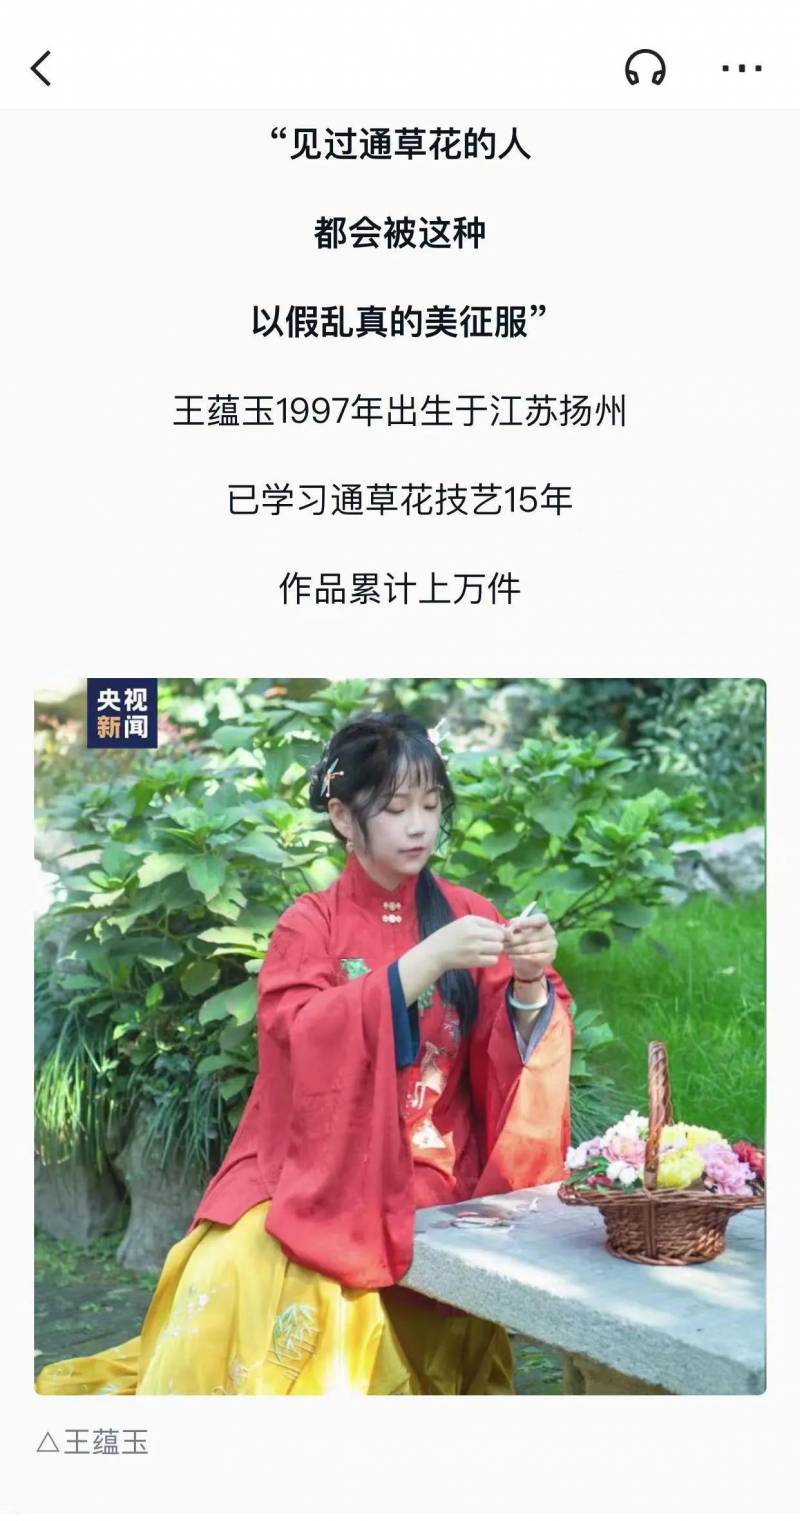 扬州晚报的微博视频引发网友热议，90后女孩的奋斗故事登上新浪微博热搜